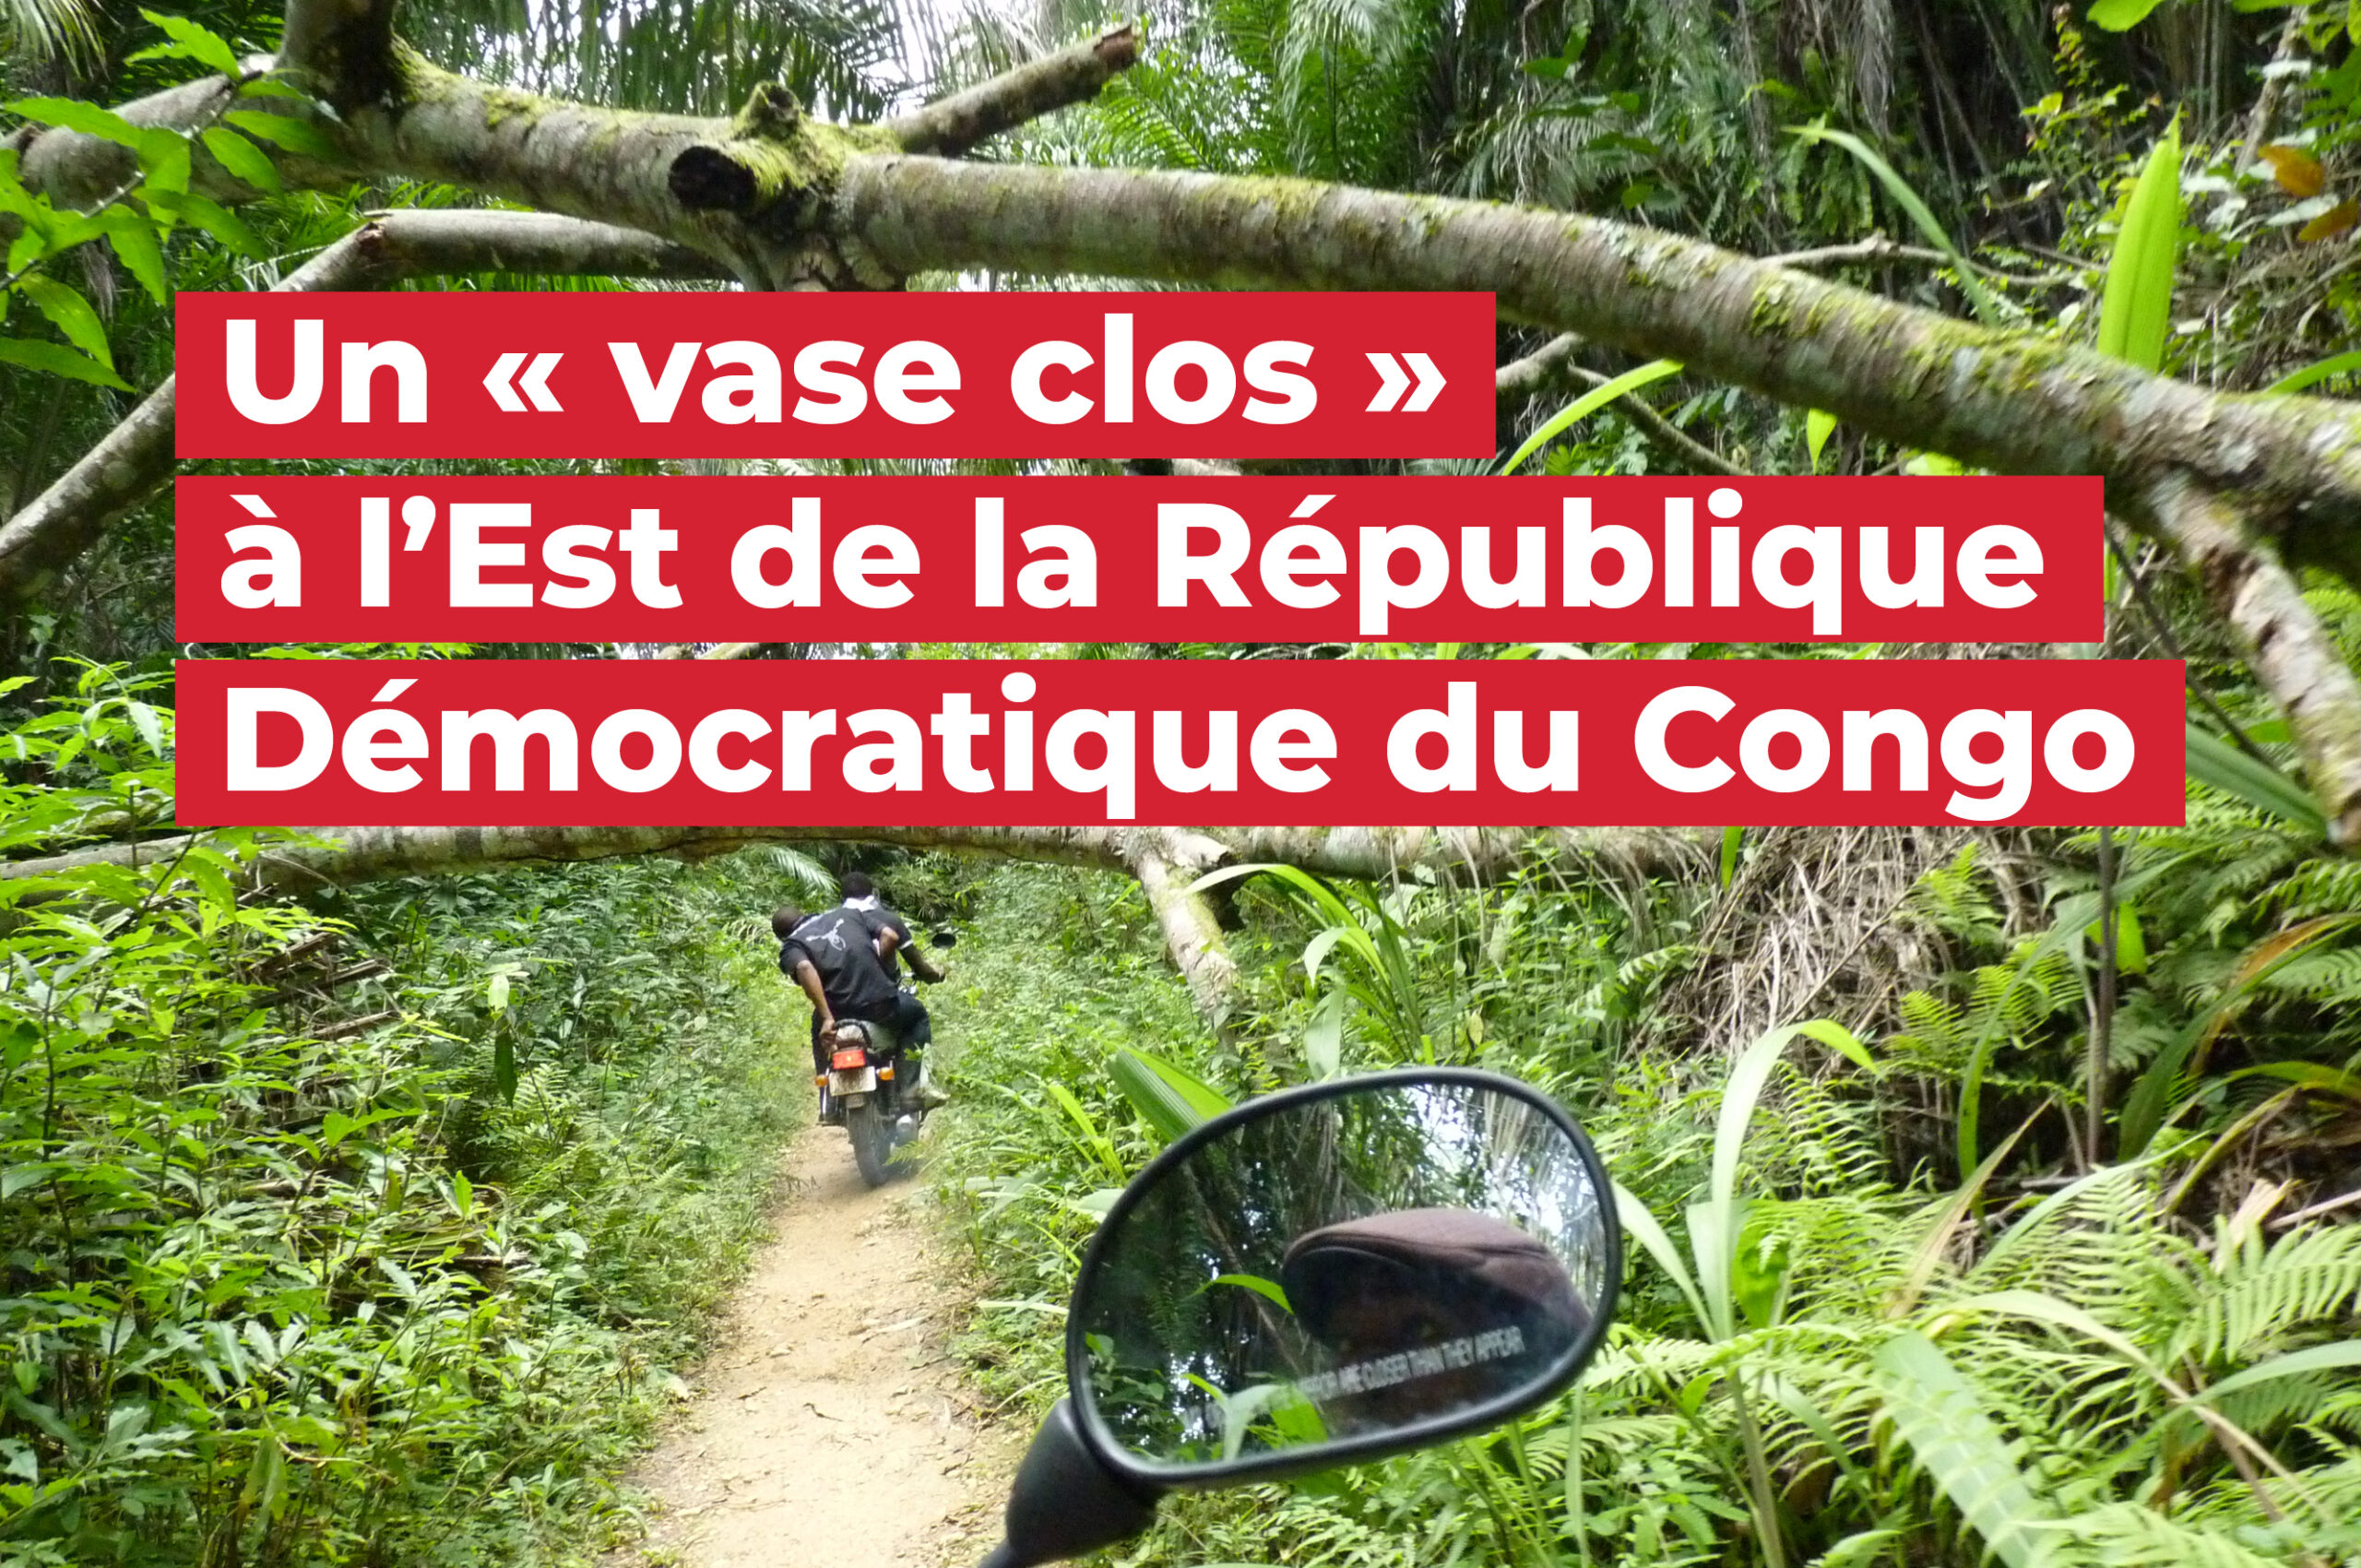 15_GIC_Un « vase clos » à l’Est de la République Démocratique du Congo_2